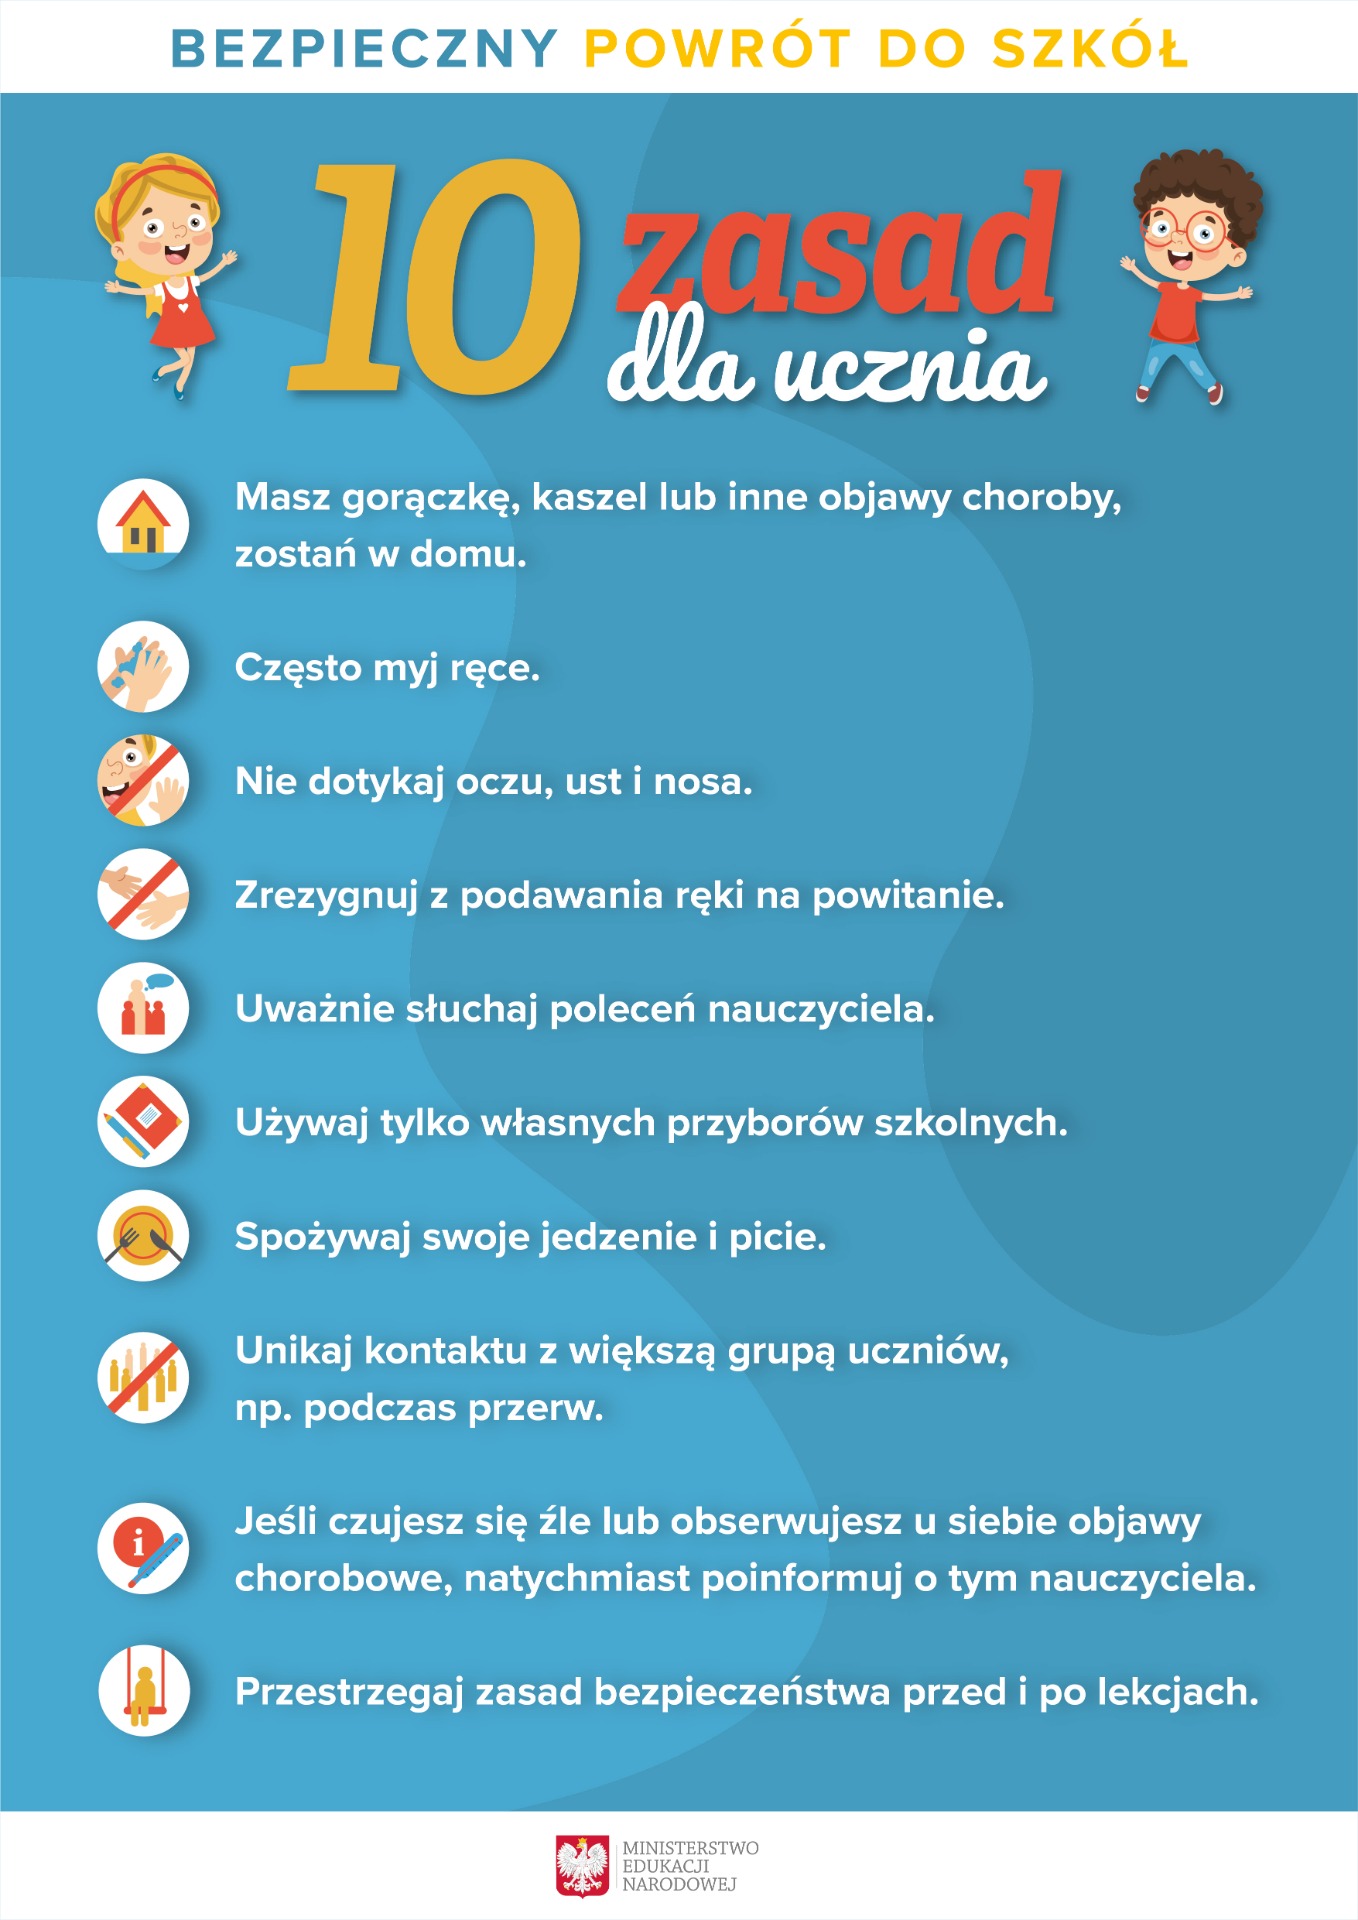 10 zasad bezpieczeństwa - informacje dla uczniów. - Obrazek 1